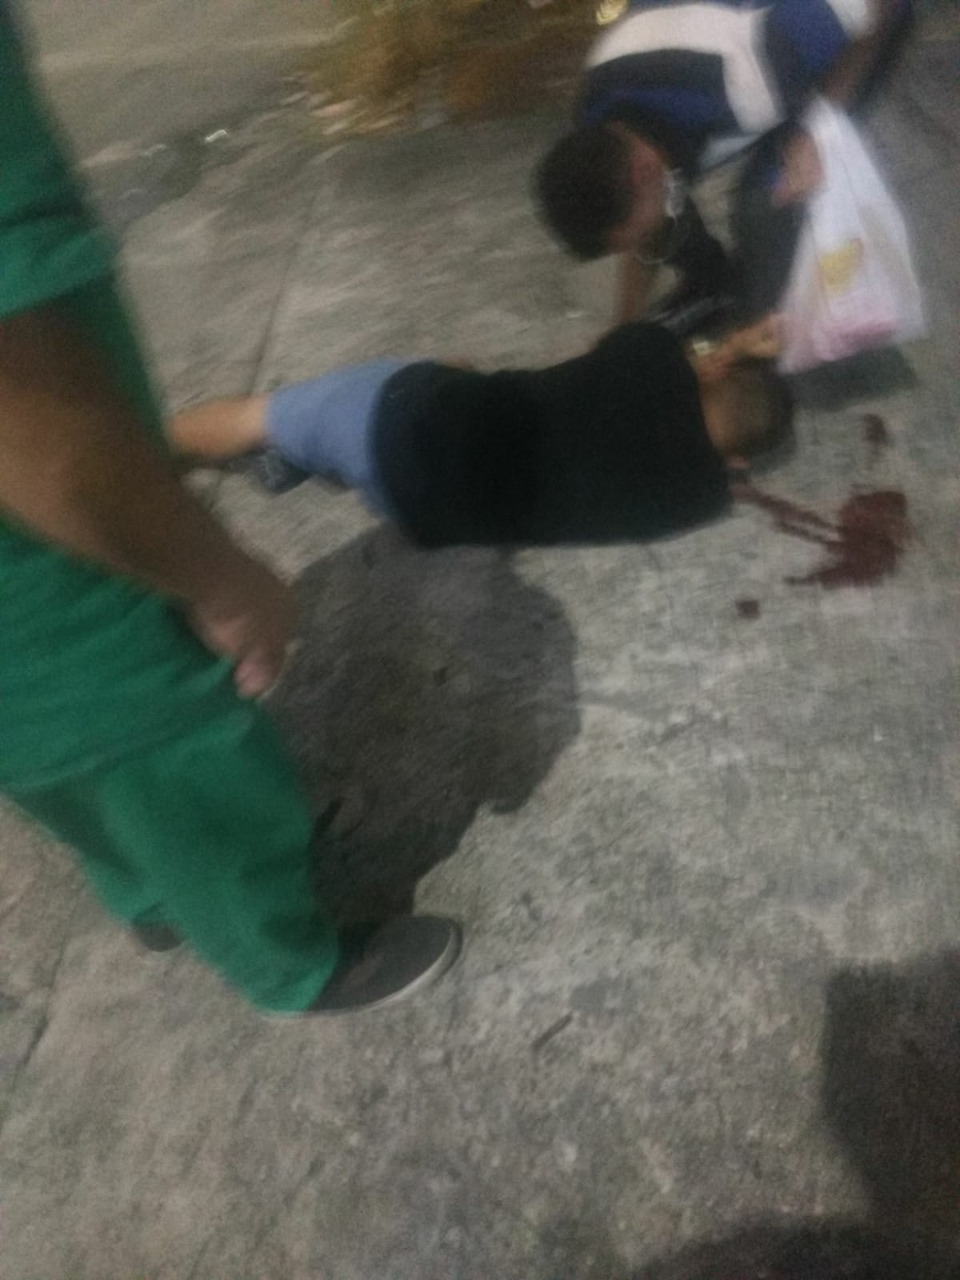 Cabo da PM é baleado na cabeça ao reagir a assalto em Manaus